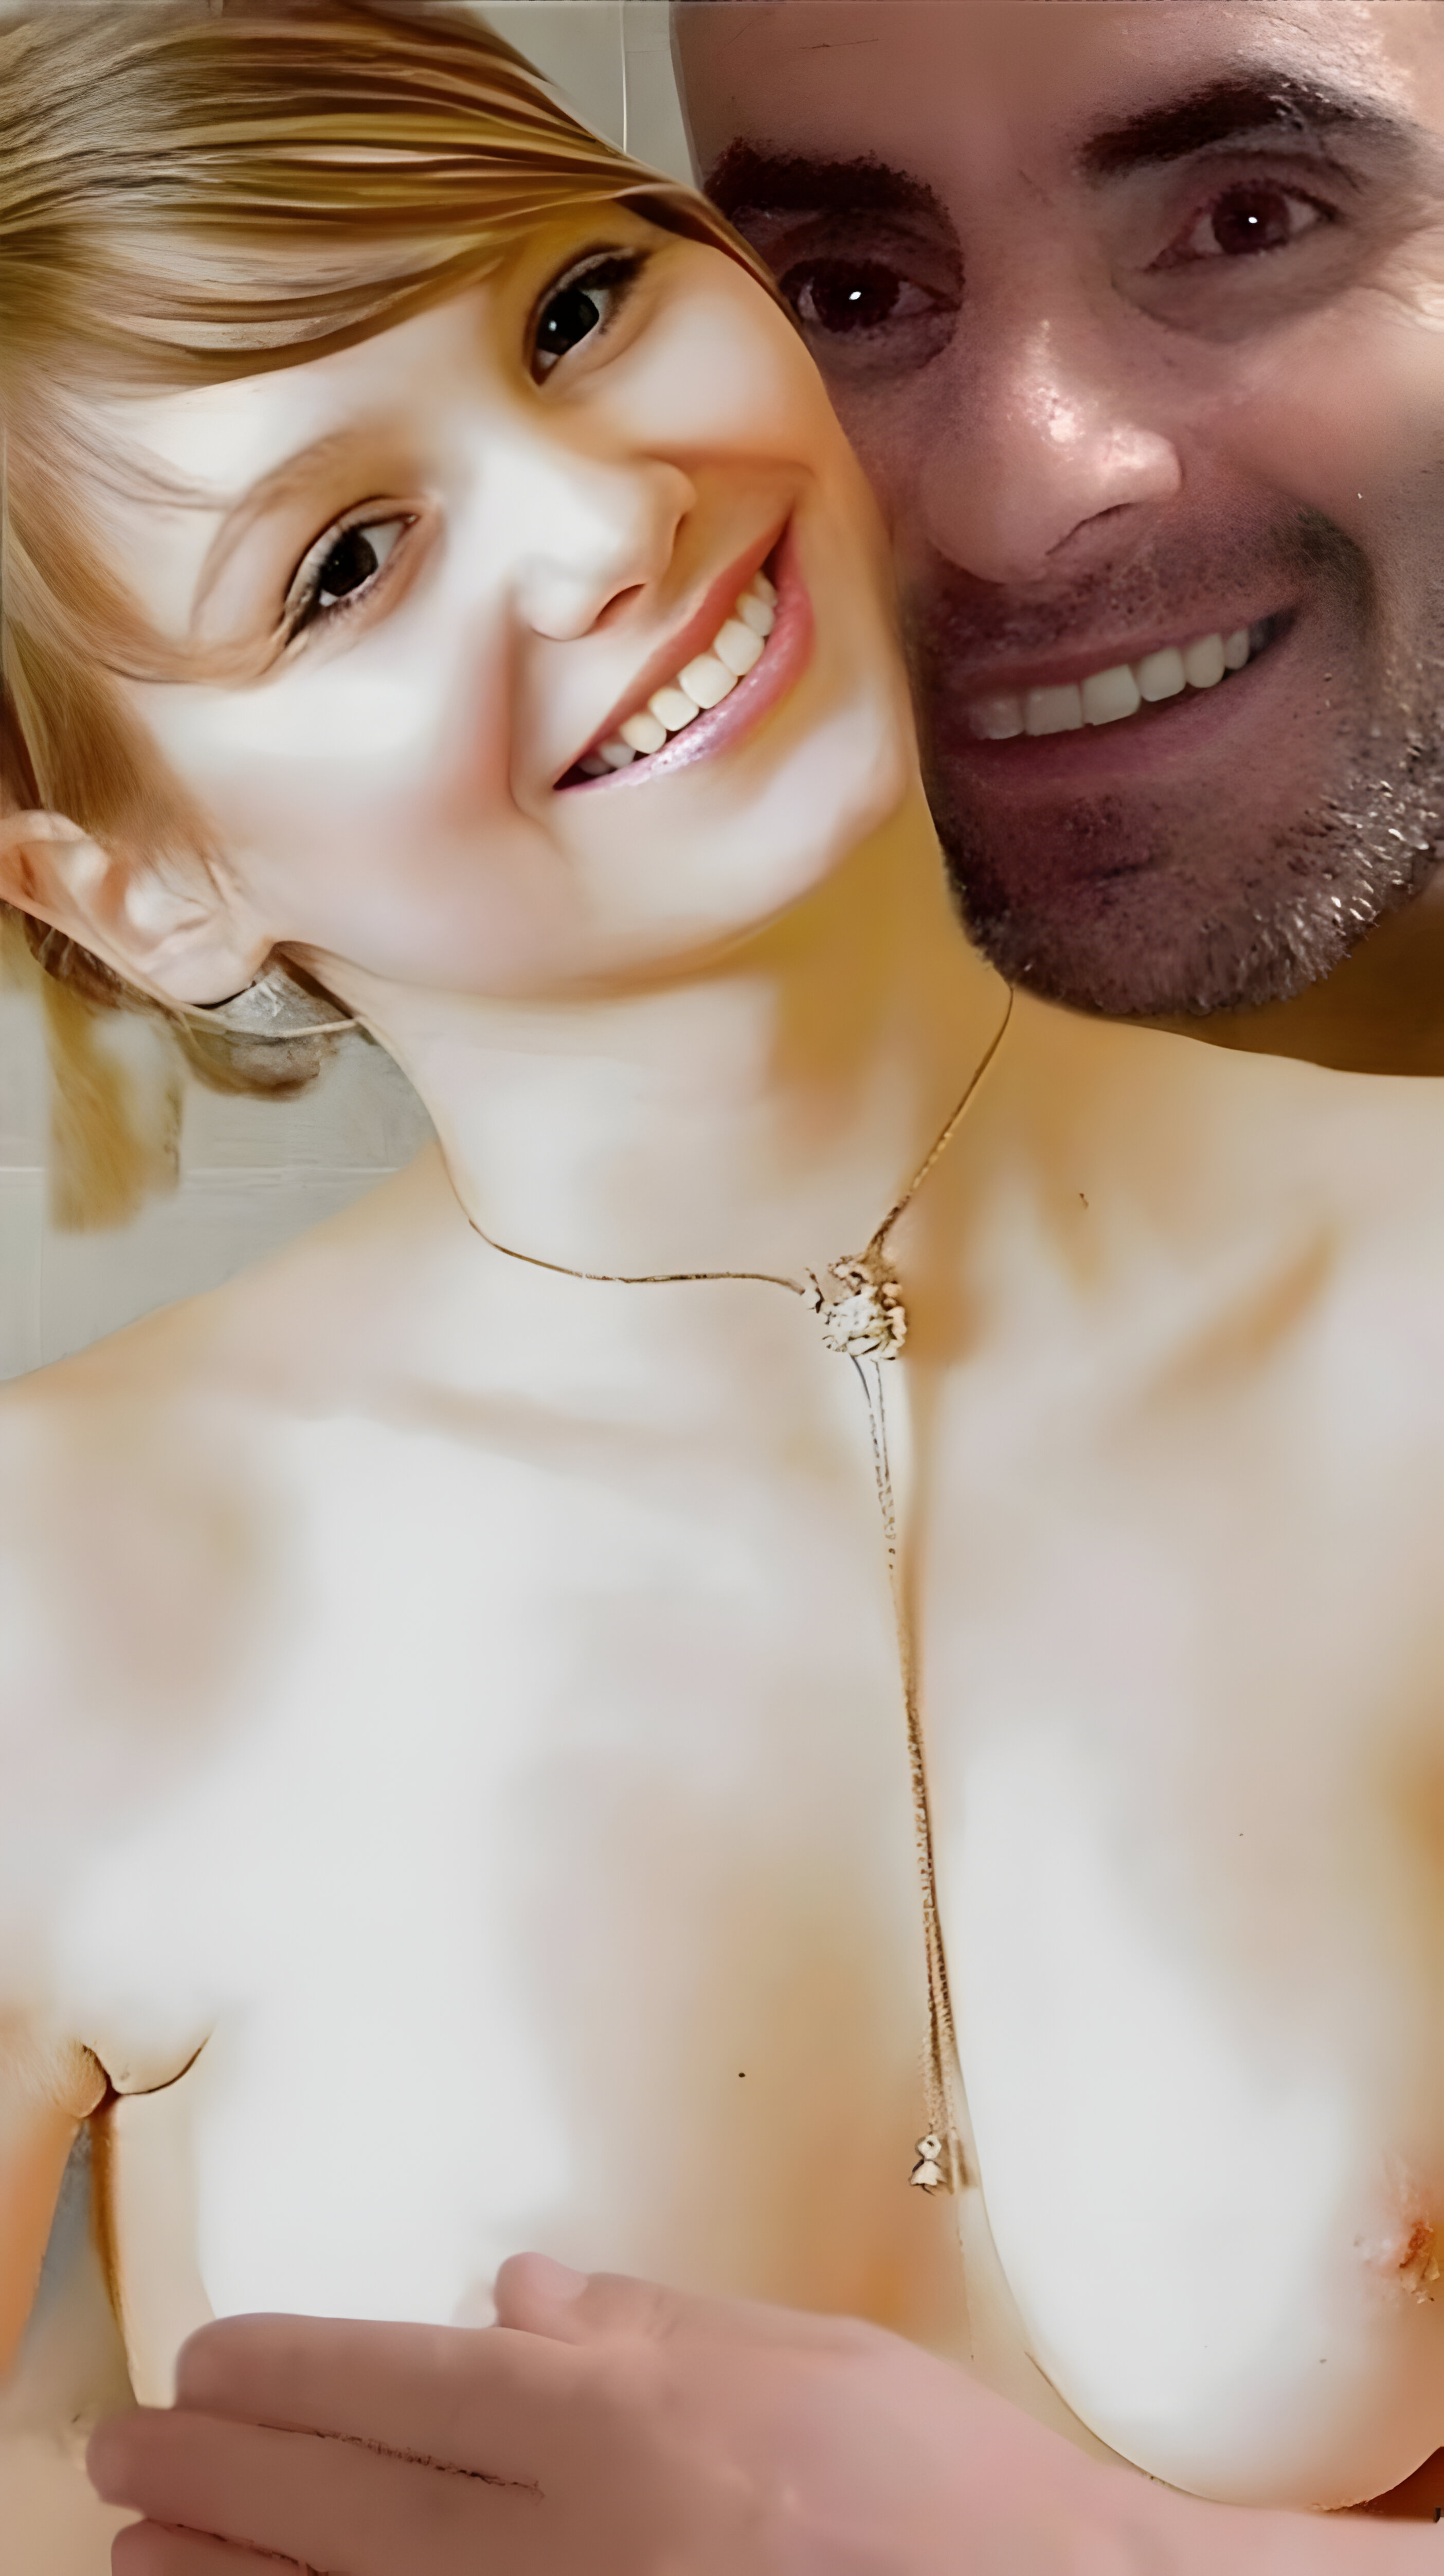 Omar porn man with teen Mishka Debu